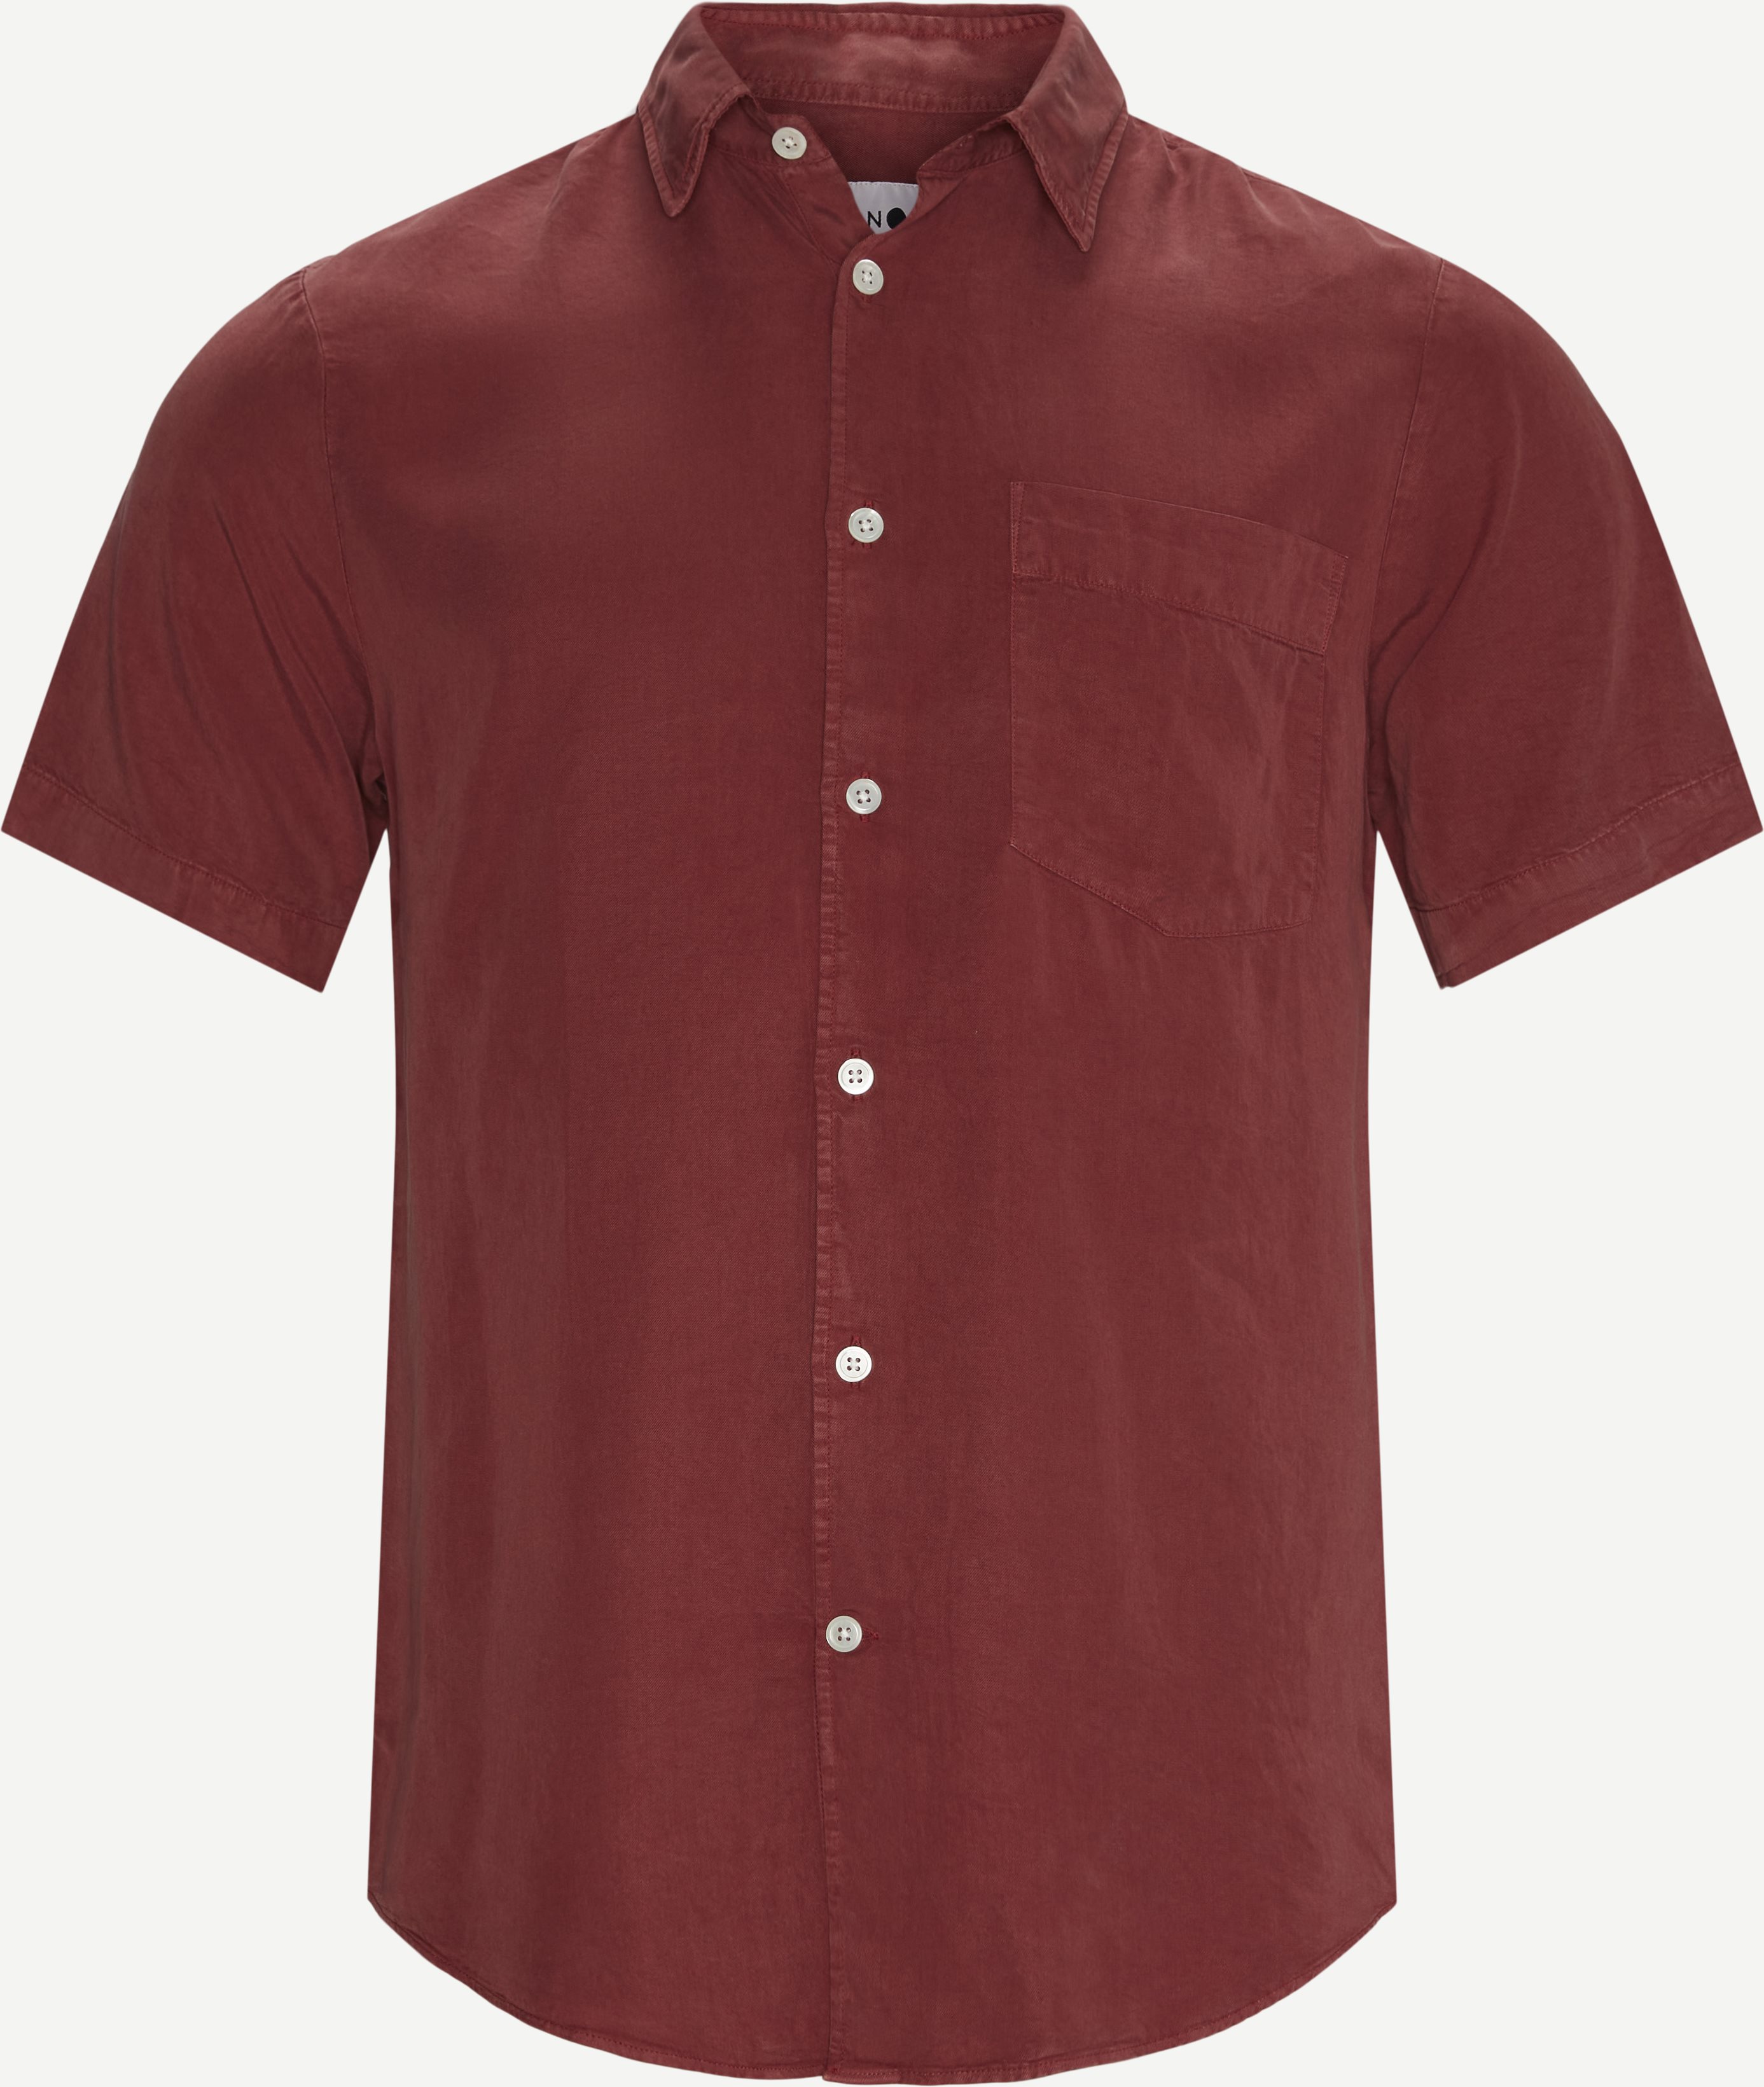 NN07 Kortærmede skjorter ERRICO SS 5969 Rød